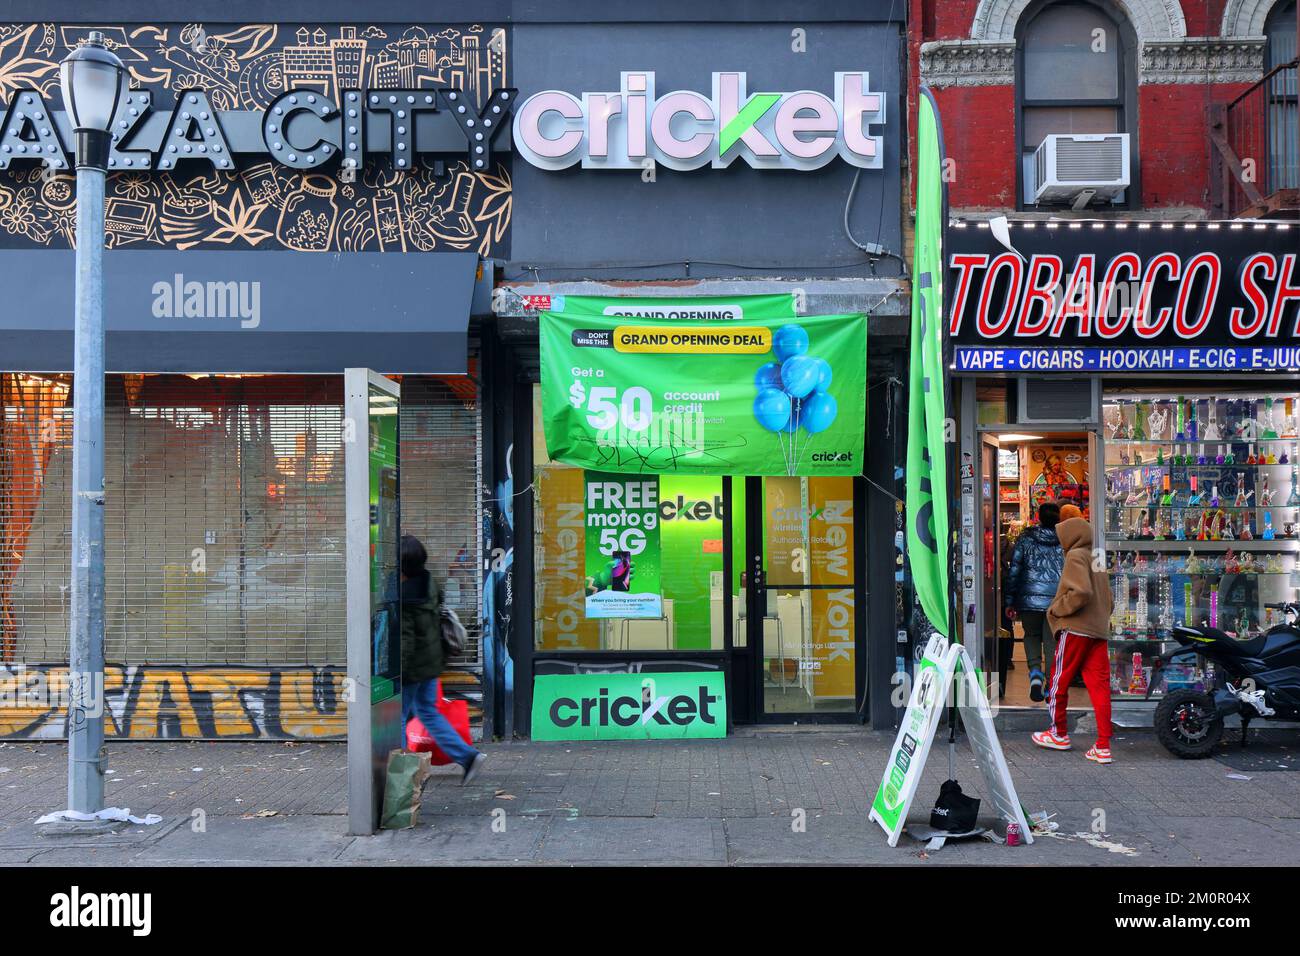 Cricket Wireless, 109 Clinton St, New York, NYC foto del negozio di un provider di telefonia cellulare wireless nel Lower East Side di Manhattan. Foto Stock